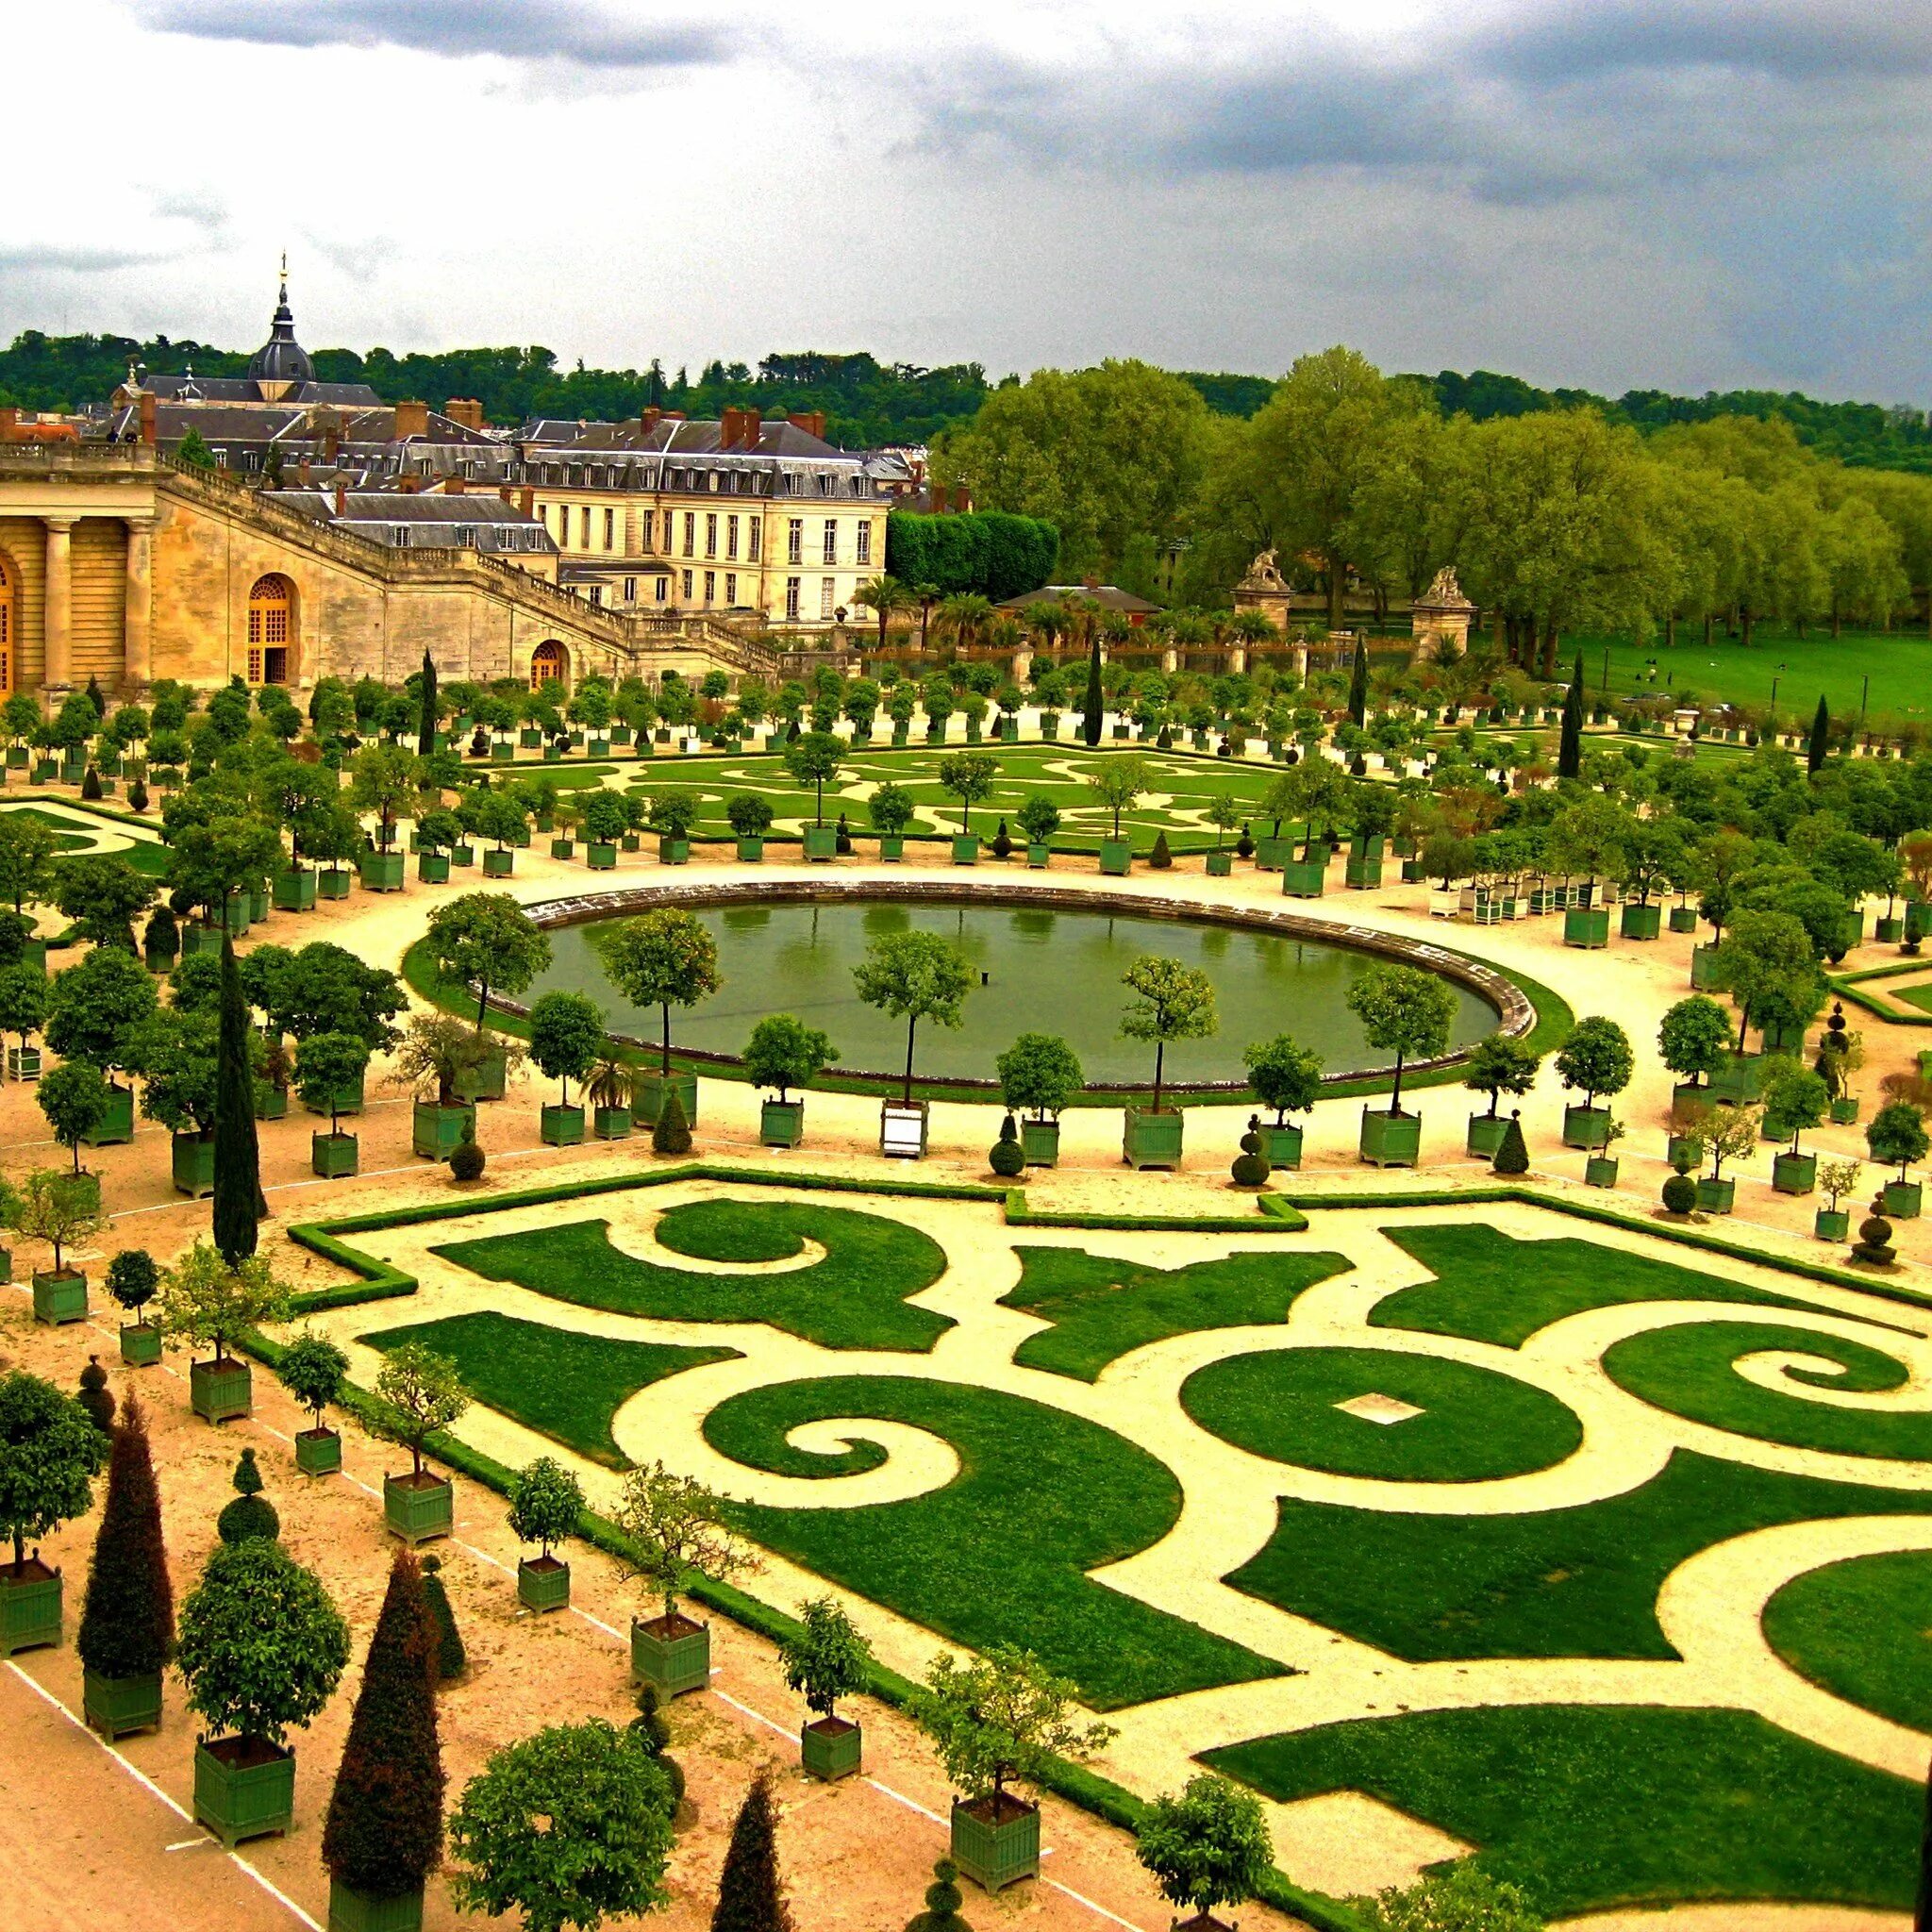 Де версаль. Версальский дворцово-парковый комплекс, Франция. Парковый ансамбль Версаля во Франции. Версальский дворец Версаль Франция.